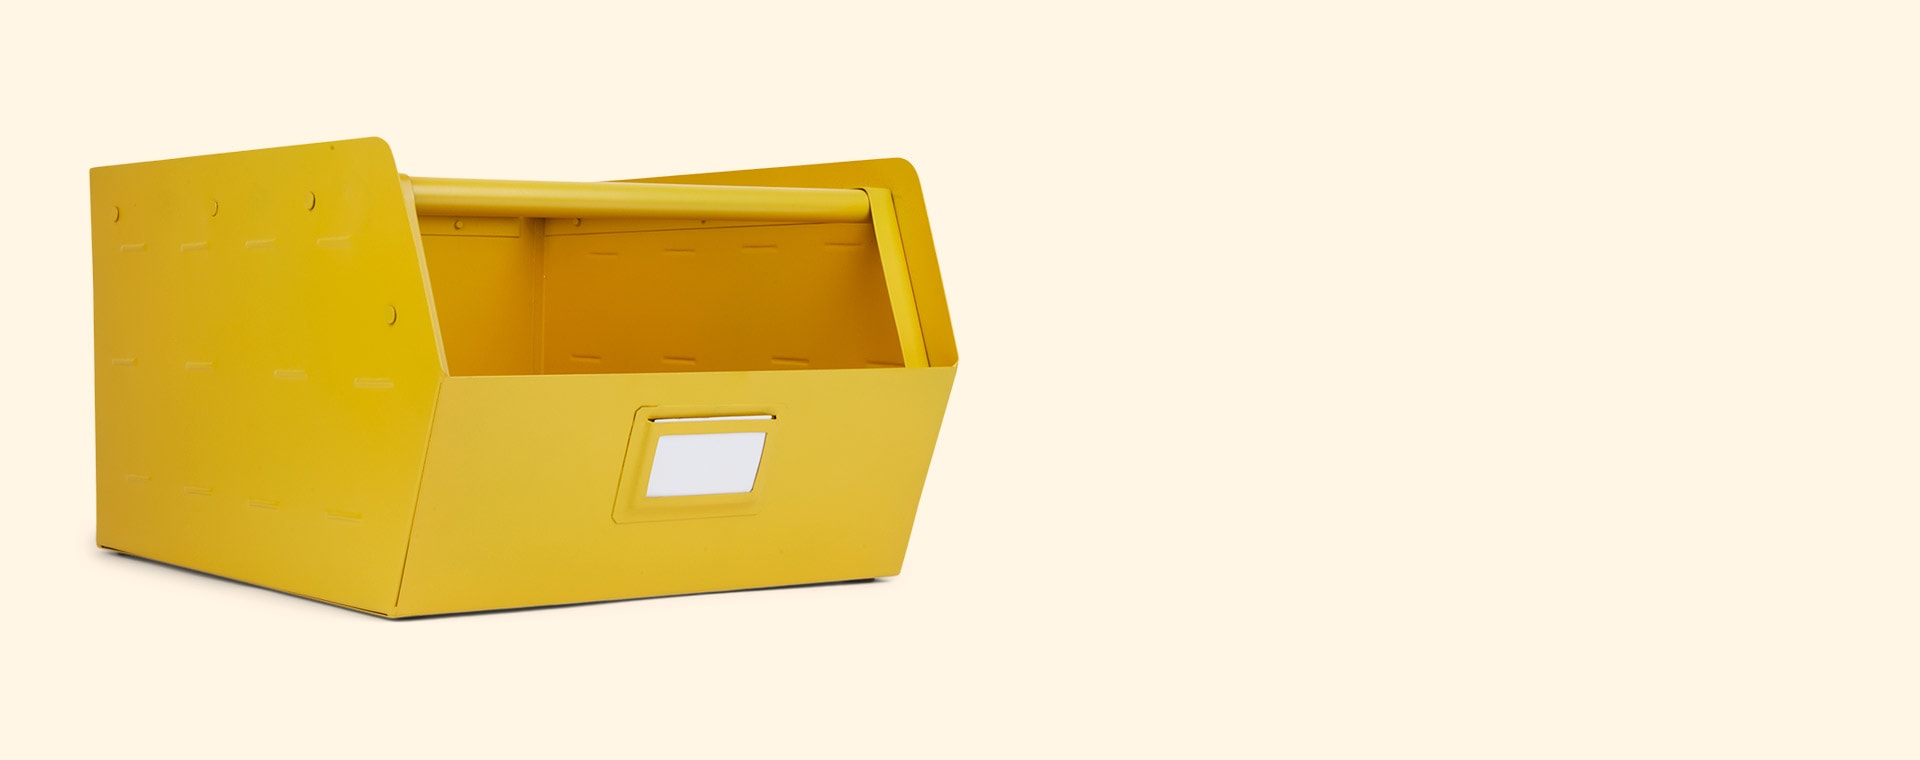 Yellow Kids Depot Metal Storage Box